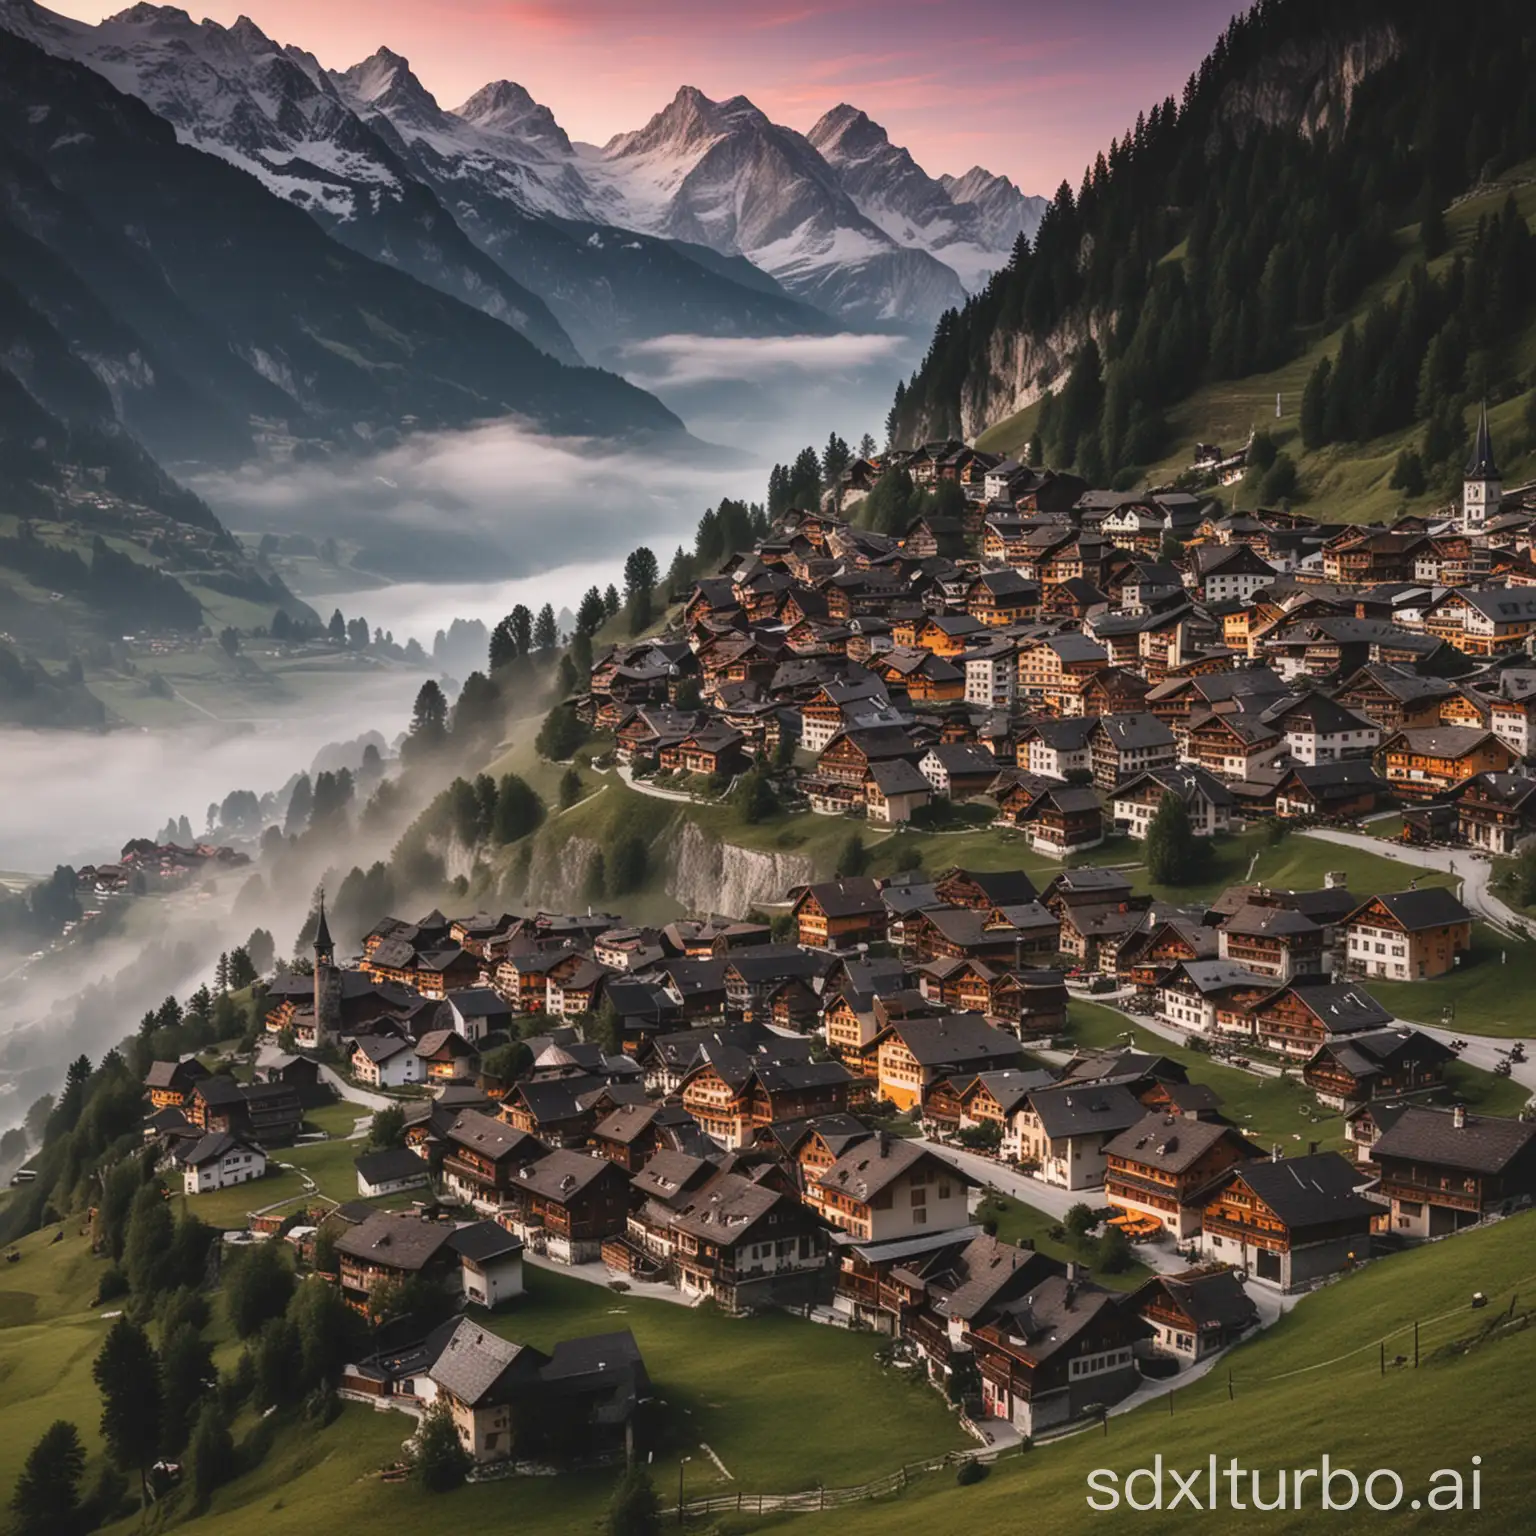 Scenic-Swiss-Alps-Village-at-Dawn-Landscape